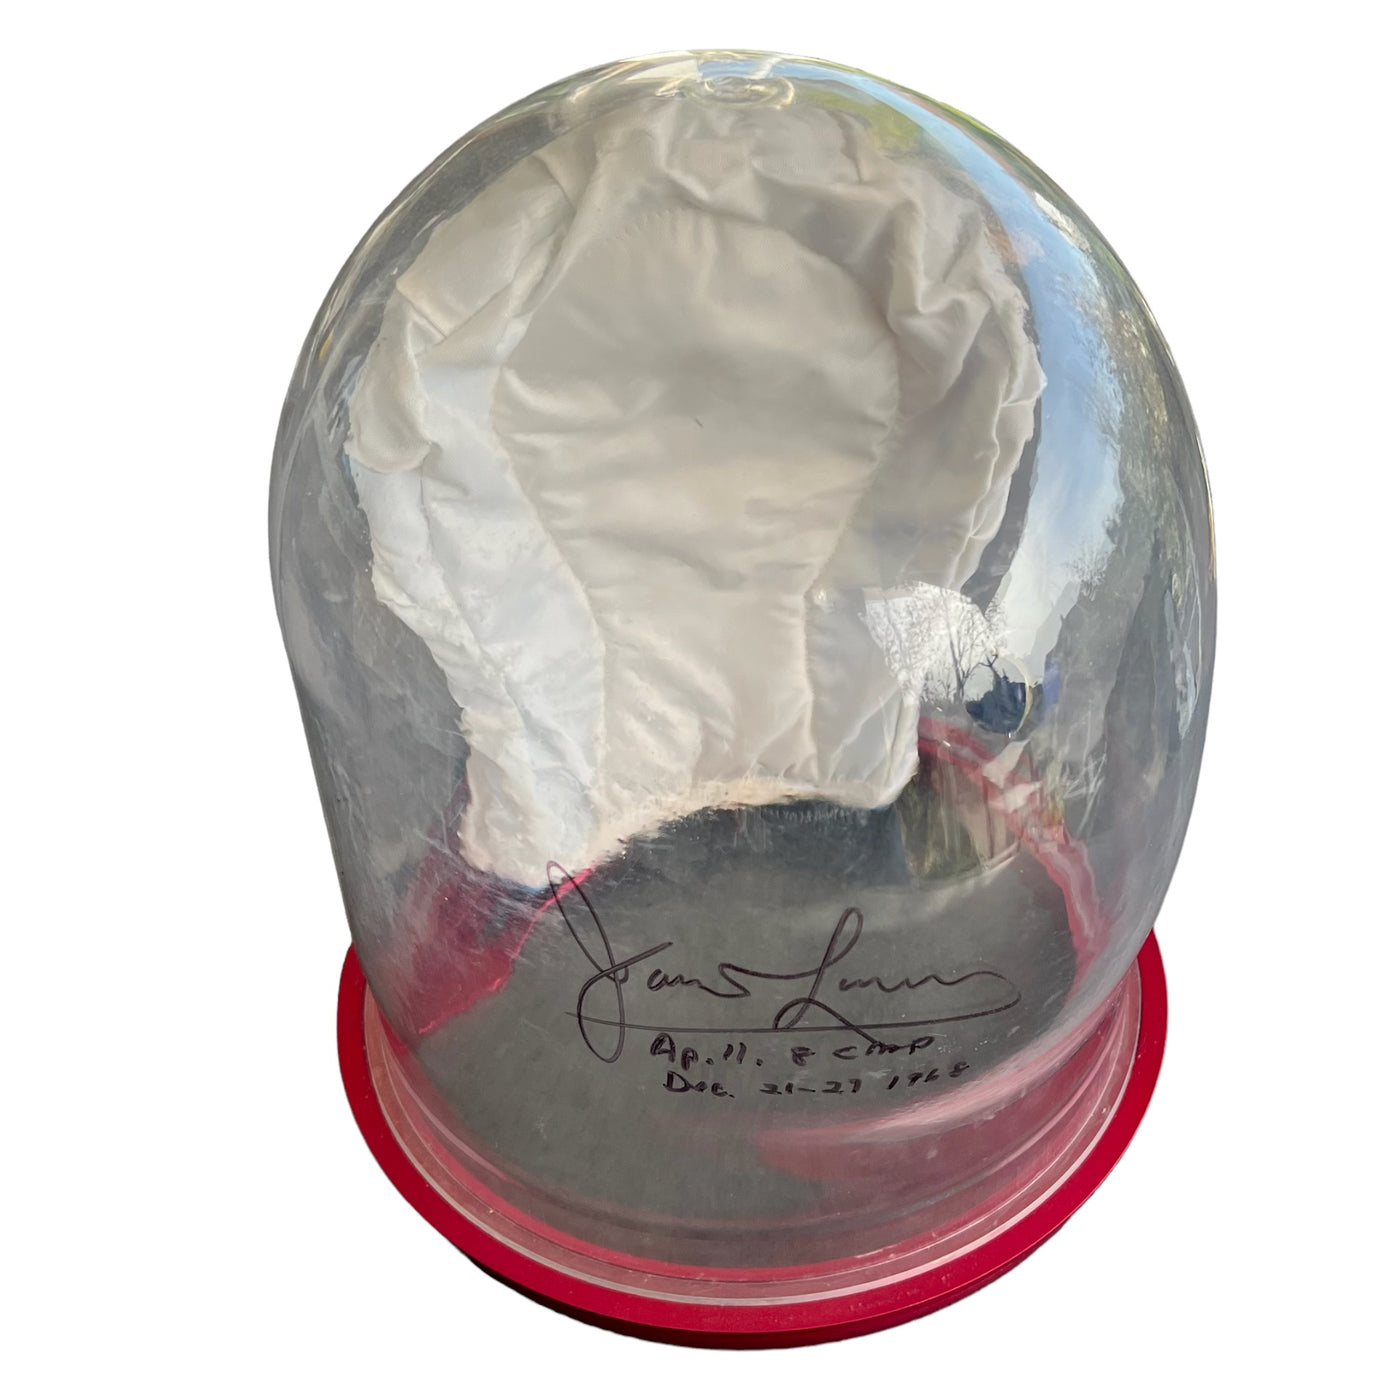 James Lovell – A7L bubble helmet